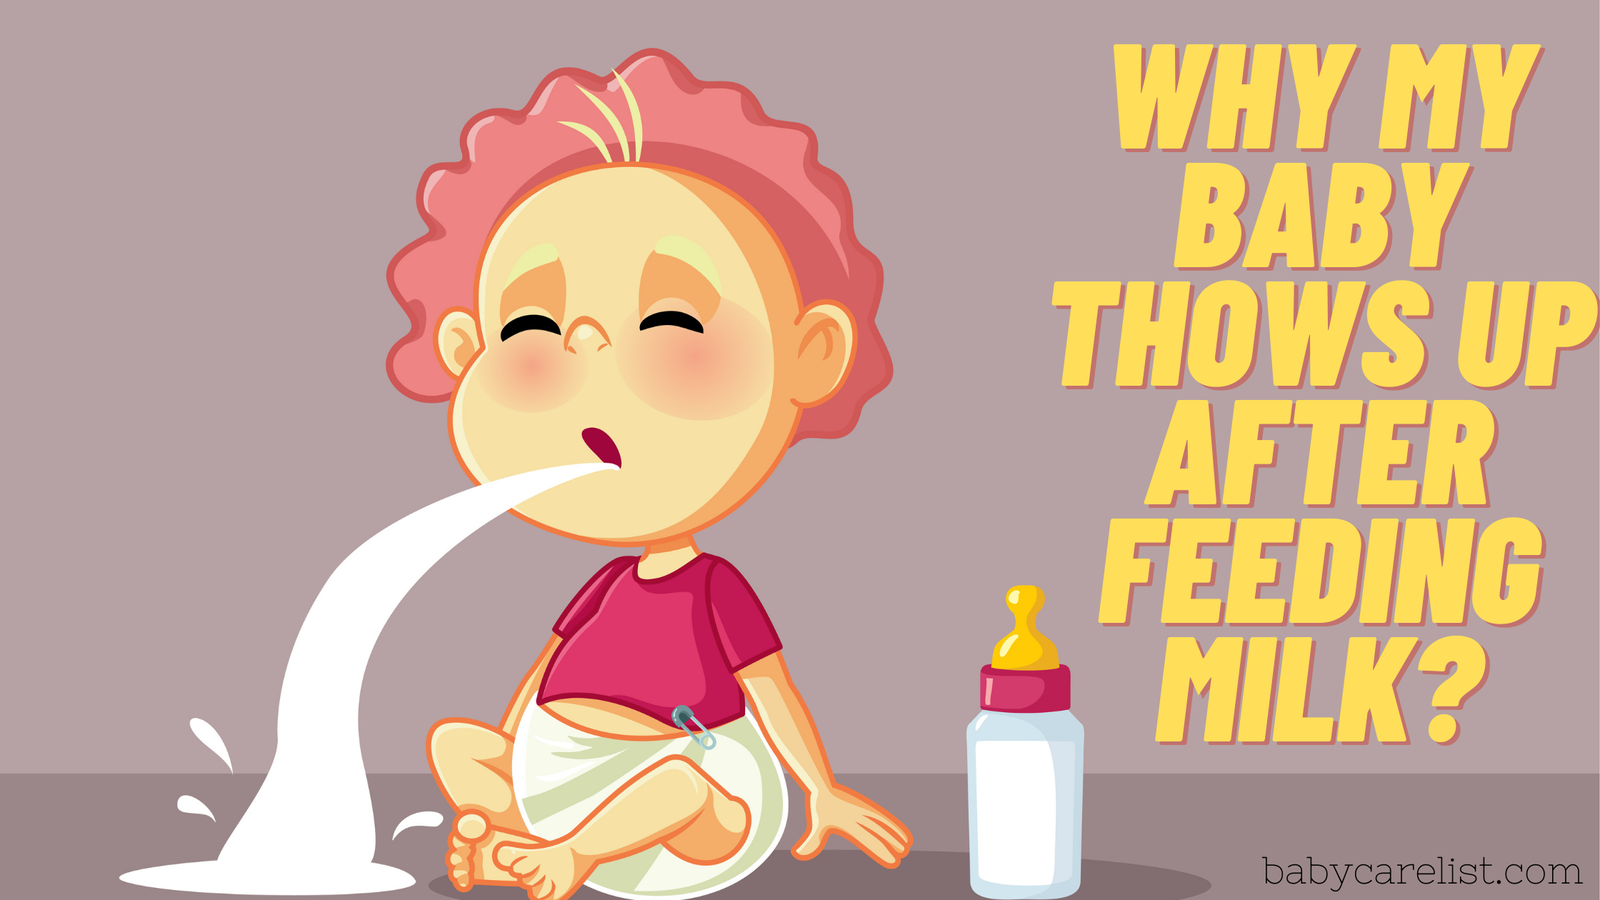 Why Baby Vomit after feeding milk